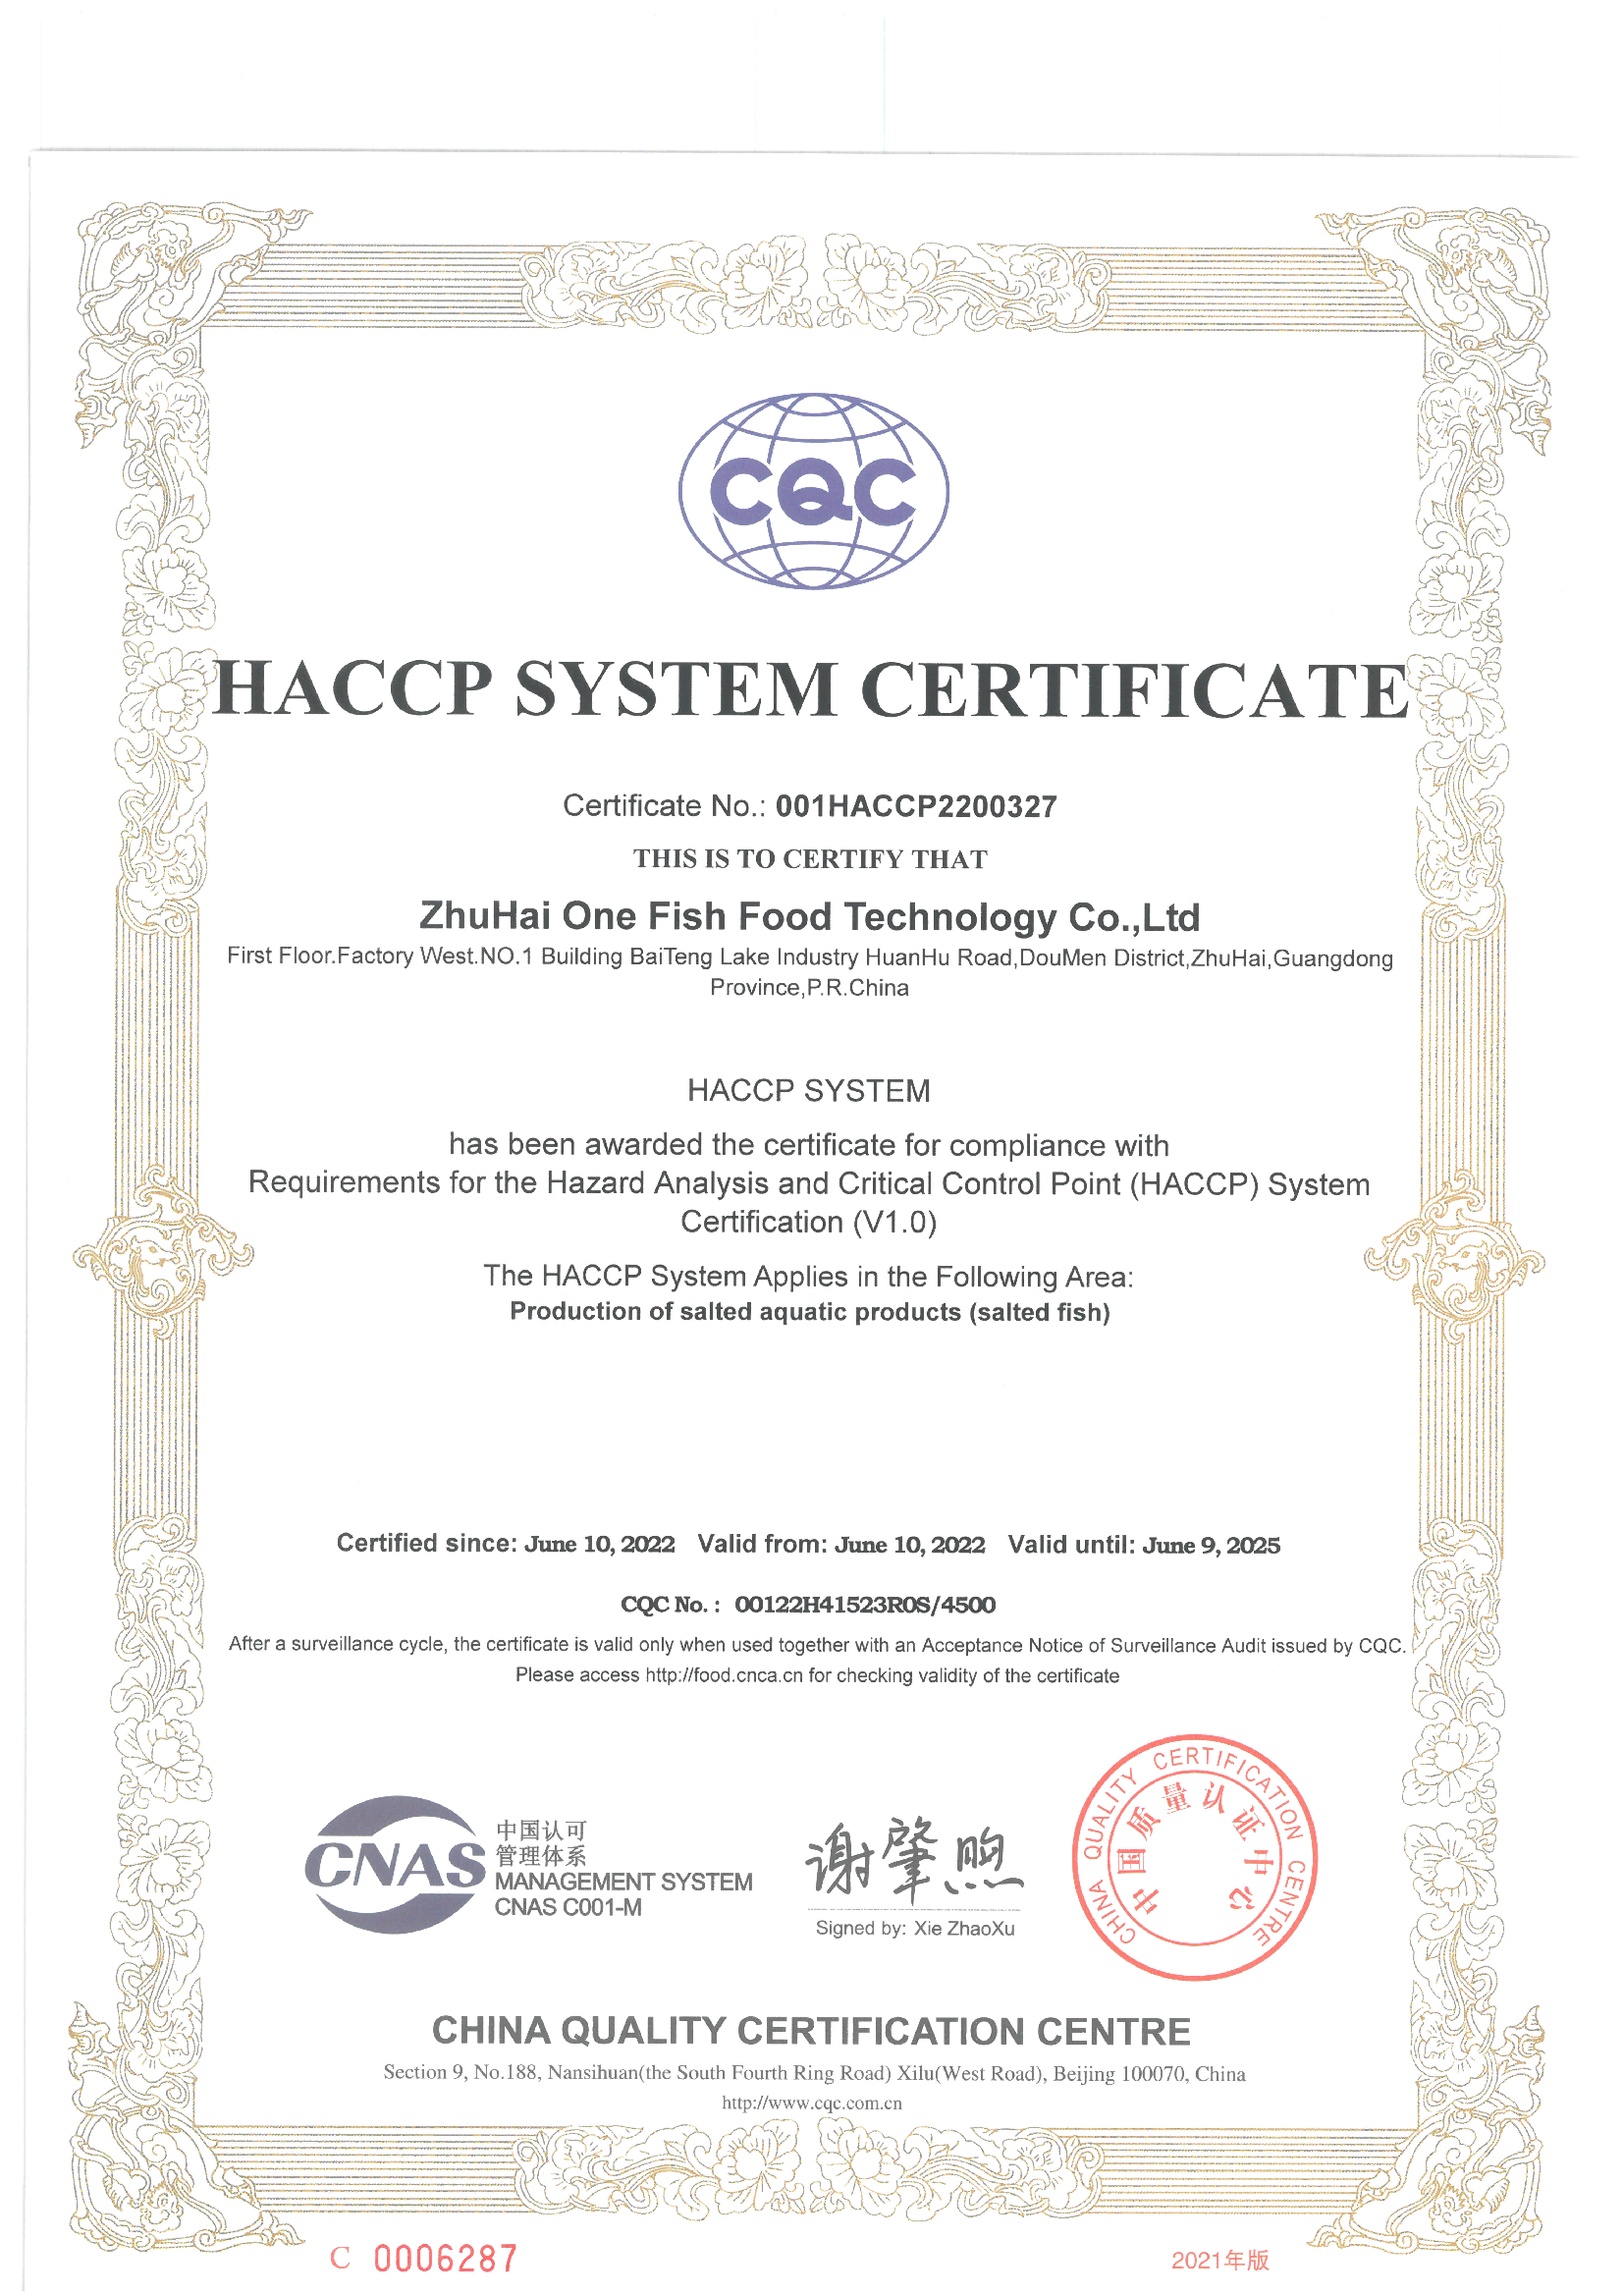 HACCP 认证证书-英文版.png